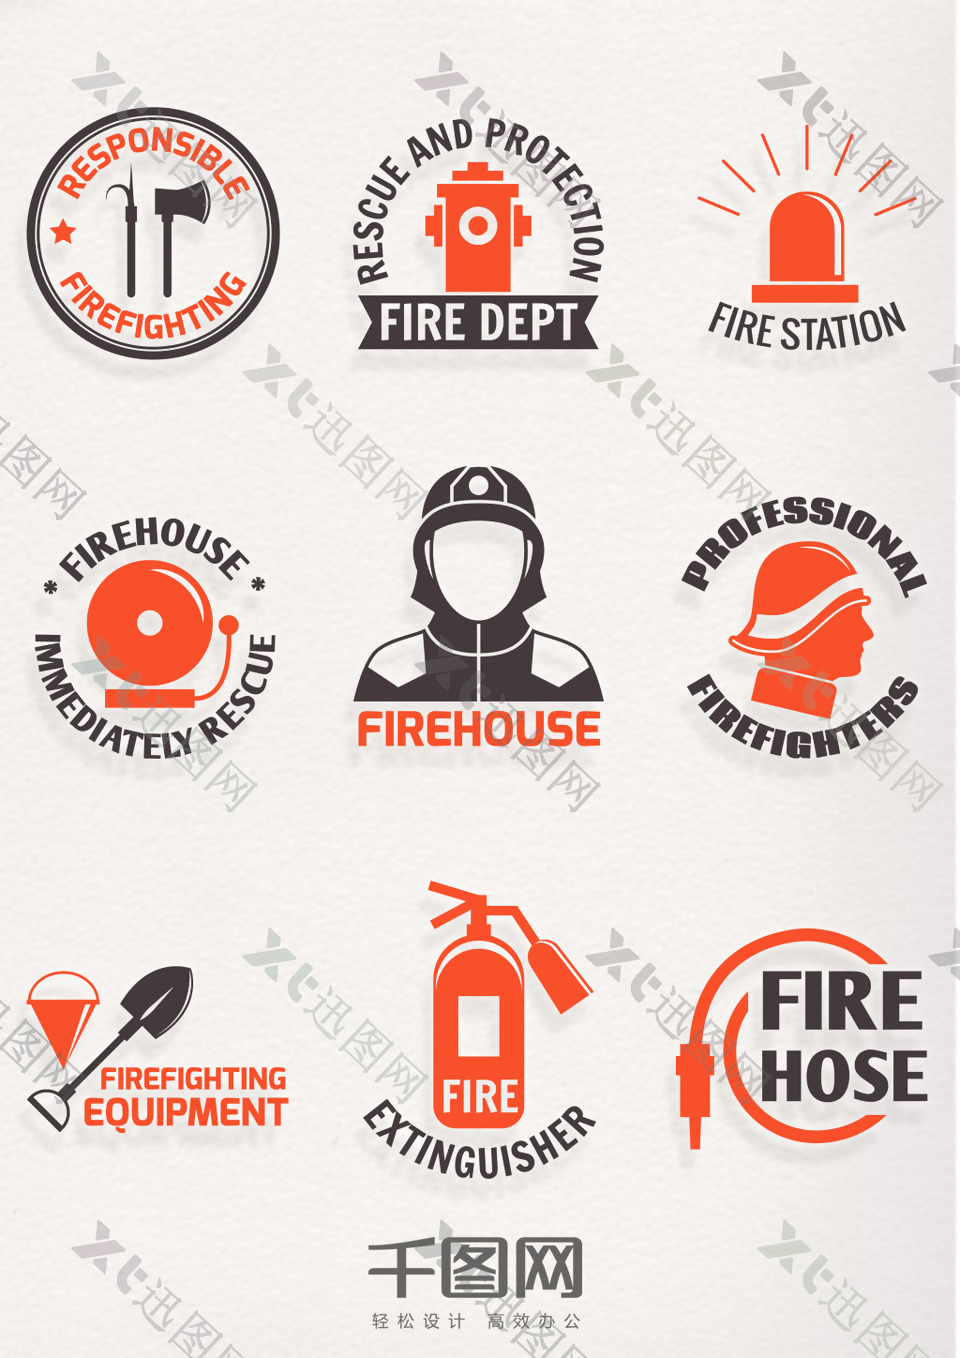 中国消防安全日精美消防图标